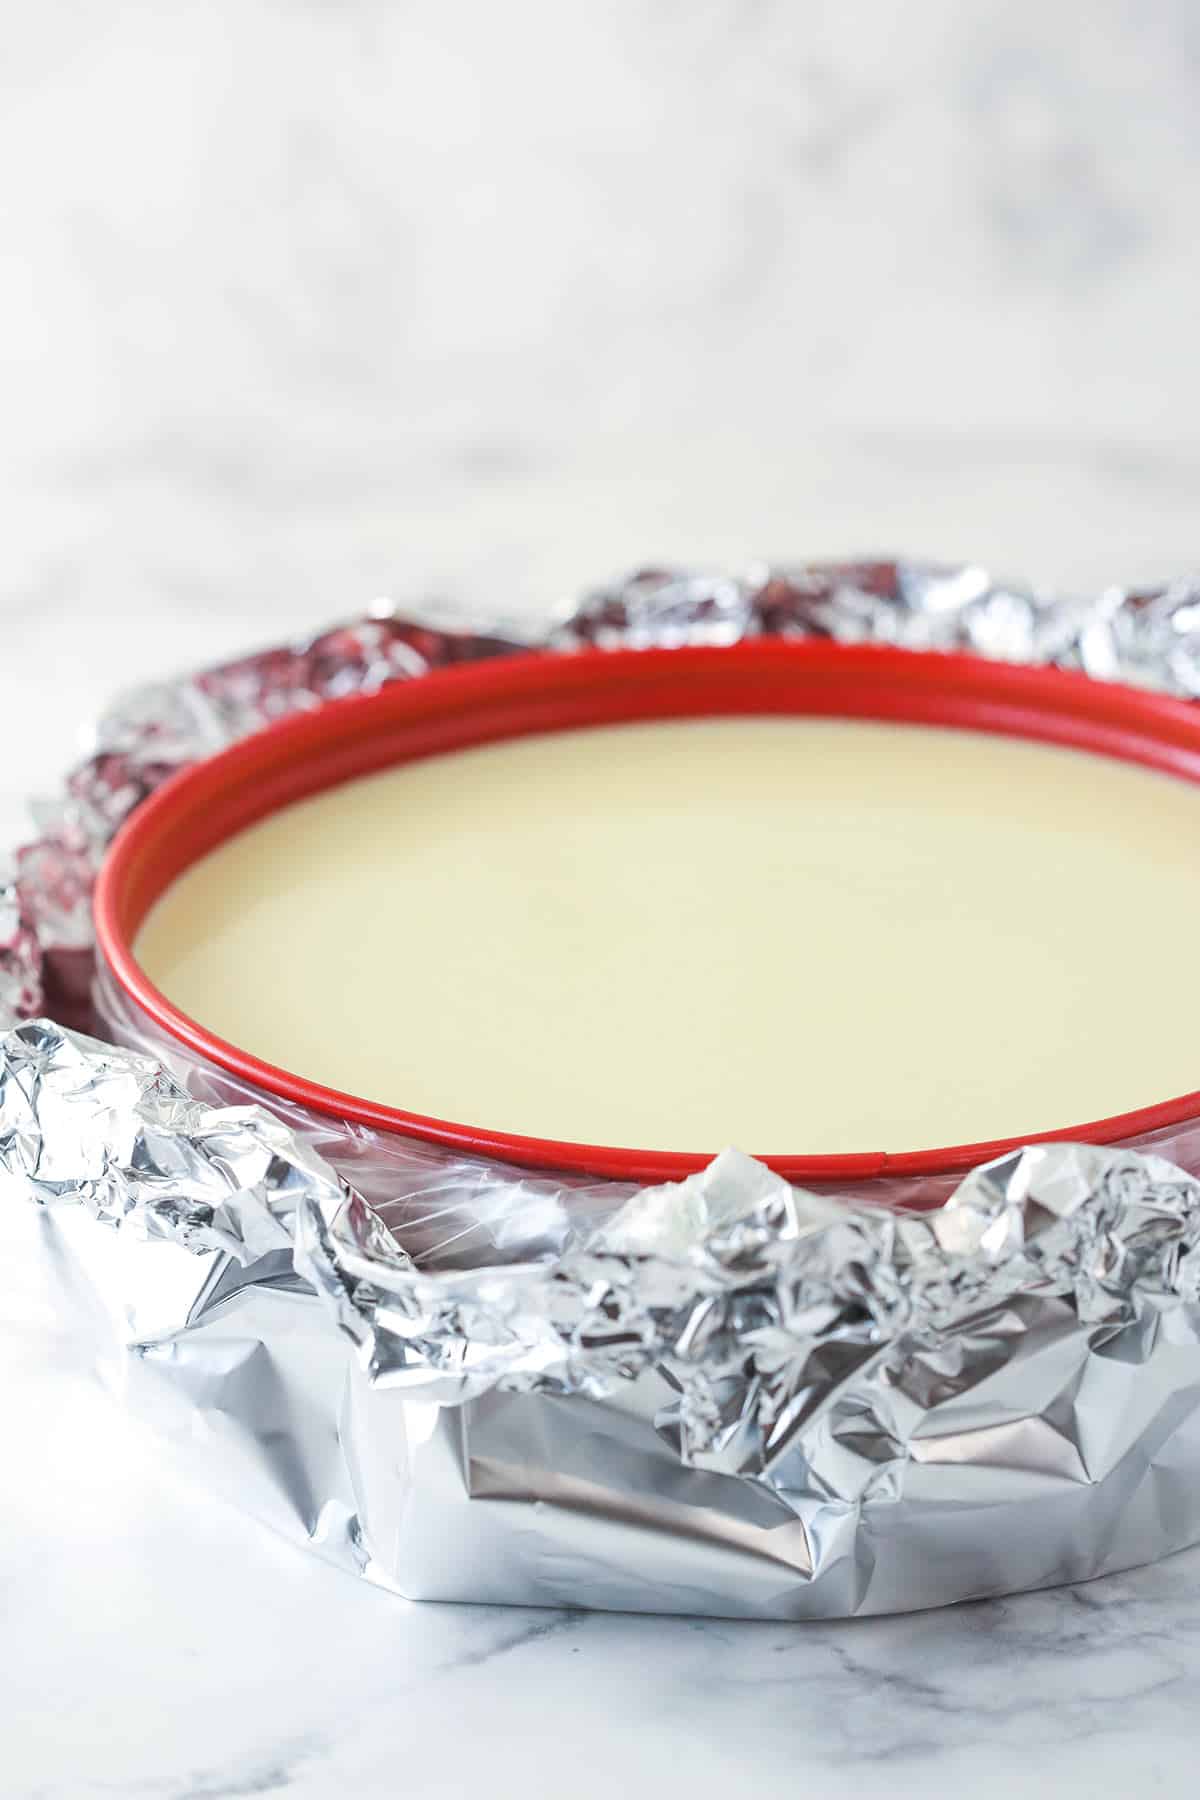 Easy Bath Cheesecake Wrap a Silicone Springform Pan Protector 